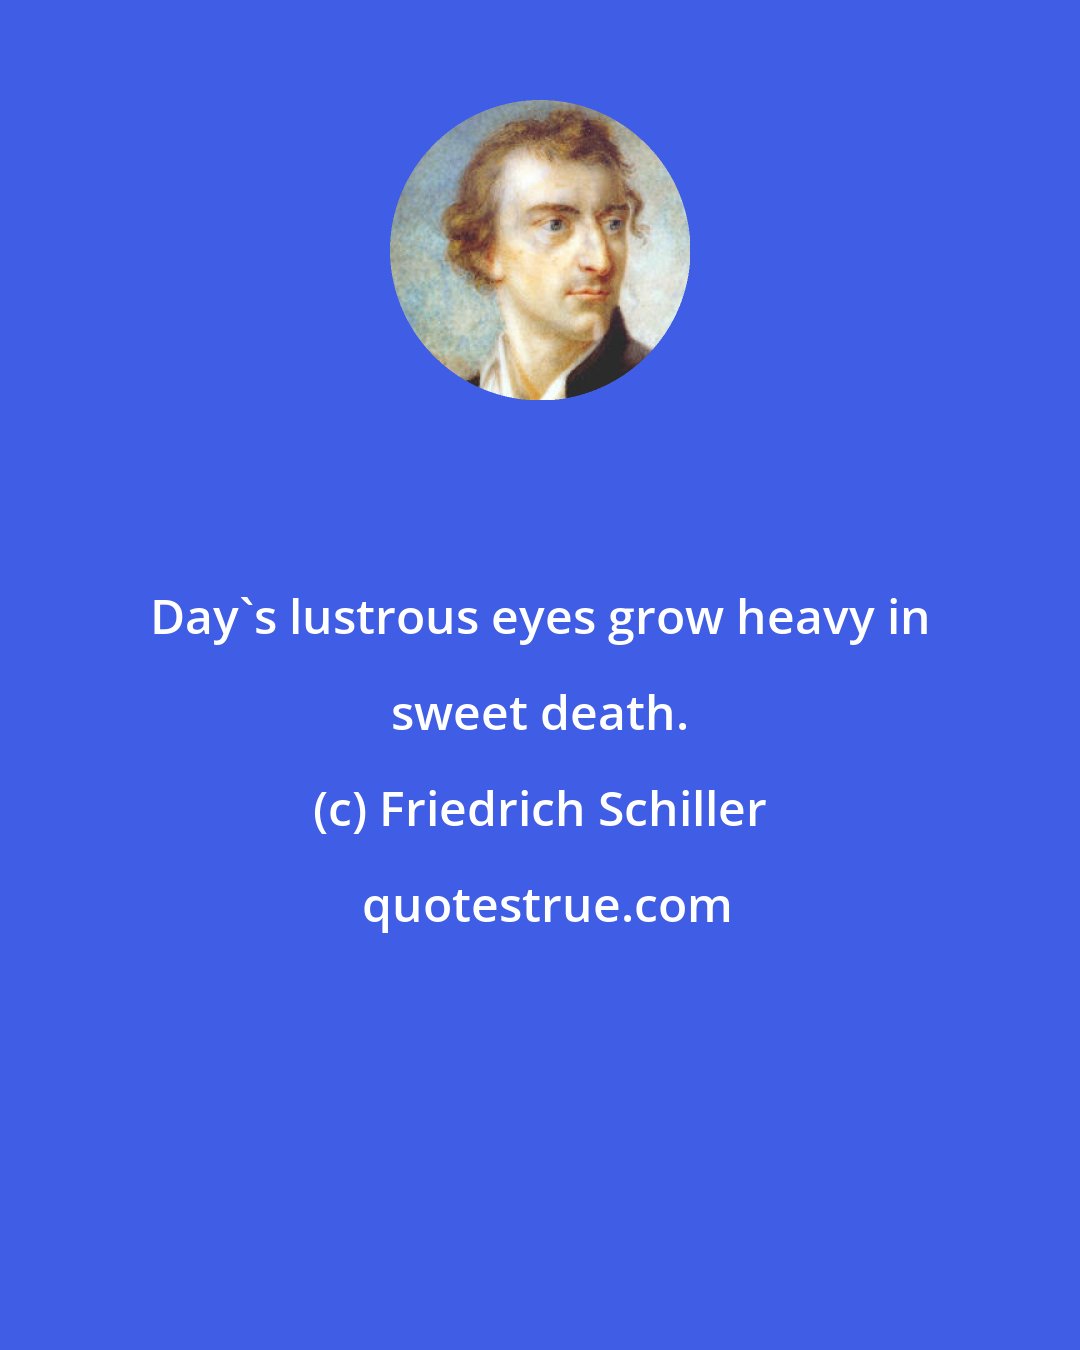 Friedrich Schiller: Day's lustrous eyes grow heavy in sweet death.